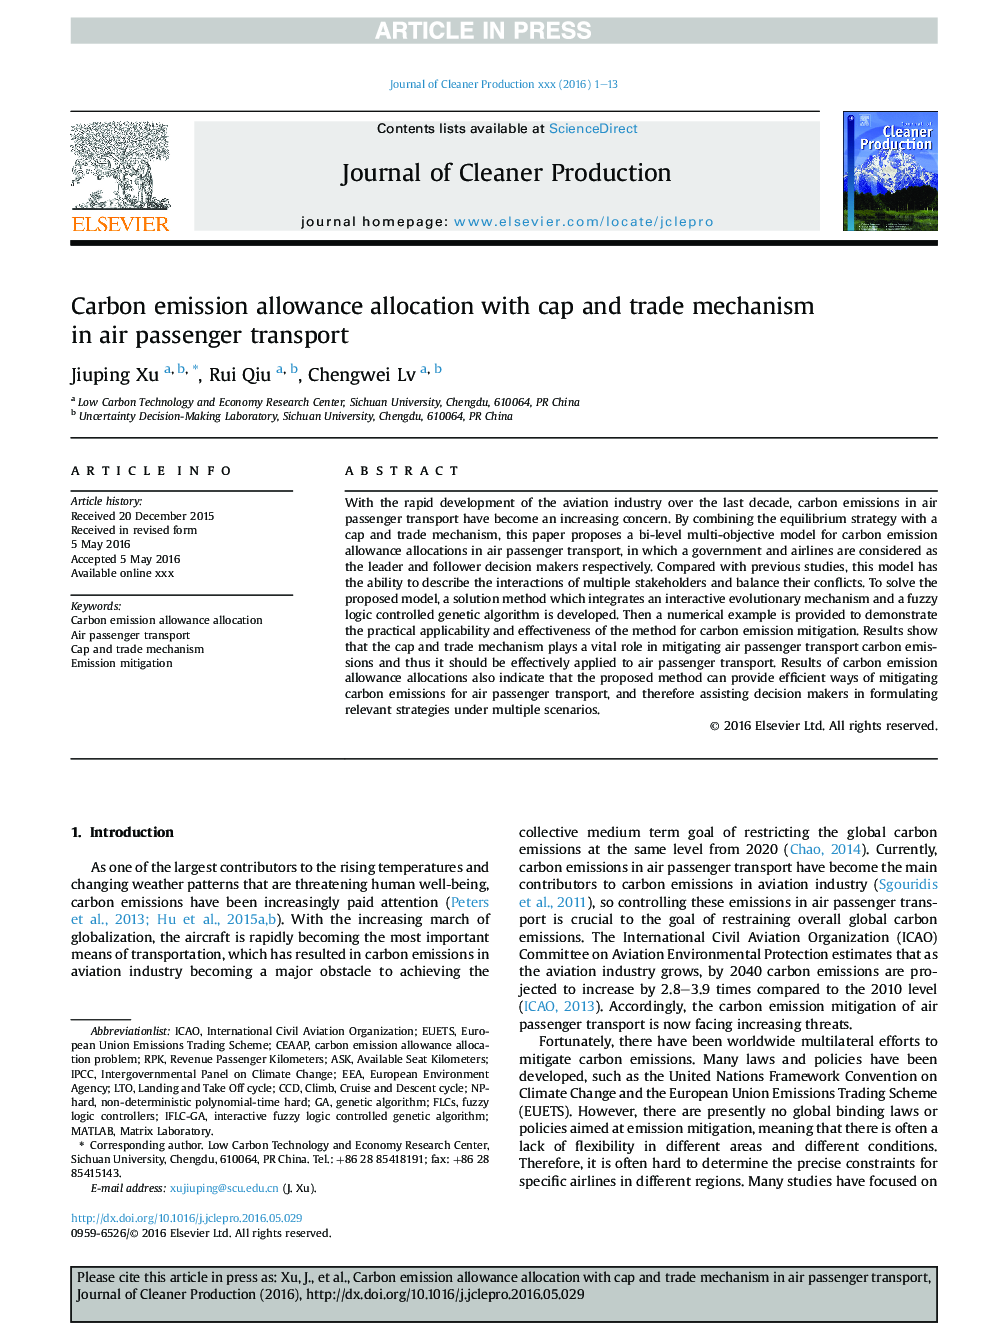 تخصیص سد کربن با استفاده از کلاه و مکانیسم تجارت در حمل و نقل هوایی مسافری 